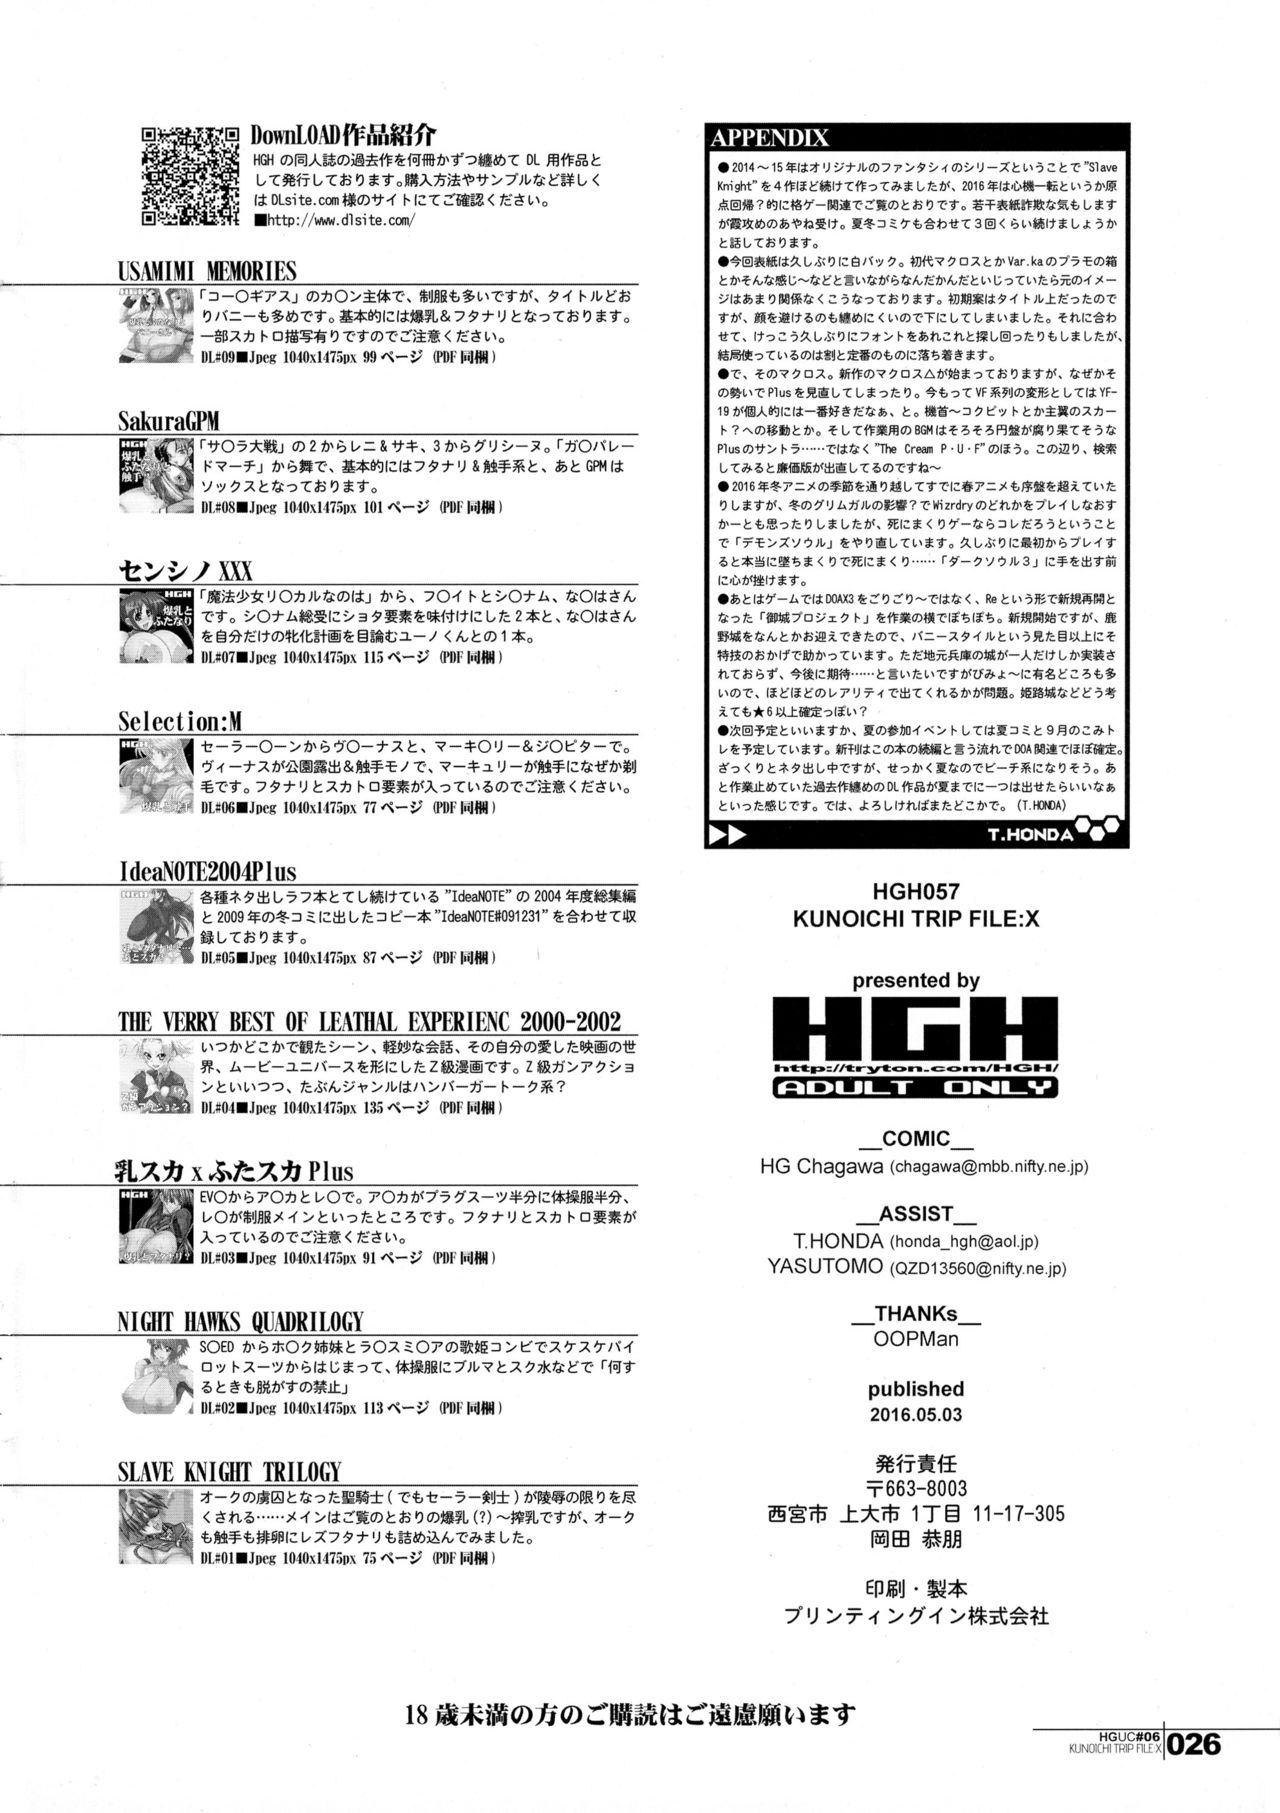 (ふたけっと12) [HGH (HG茶川)] HGUC#06-KUNOICHI TRIP FILE-(仮) (デッド・オア・アライブ)